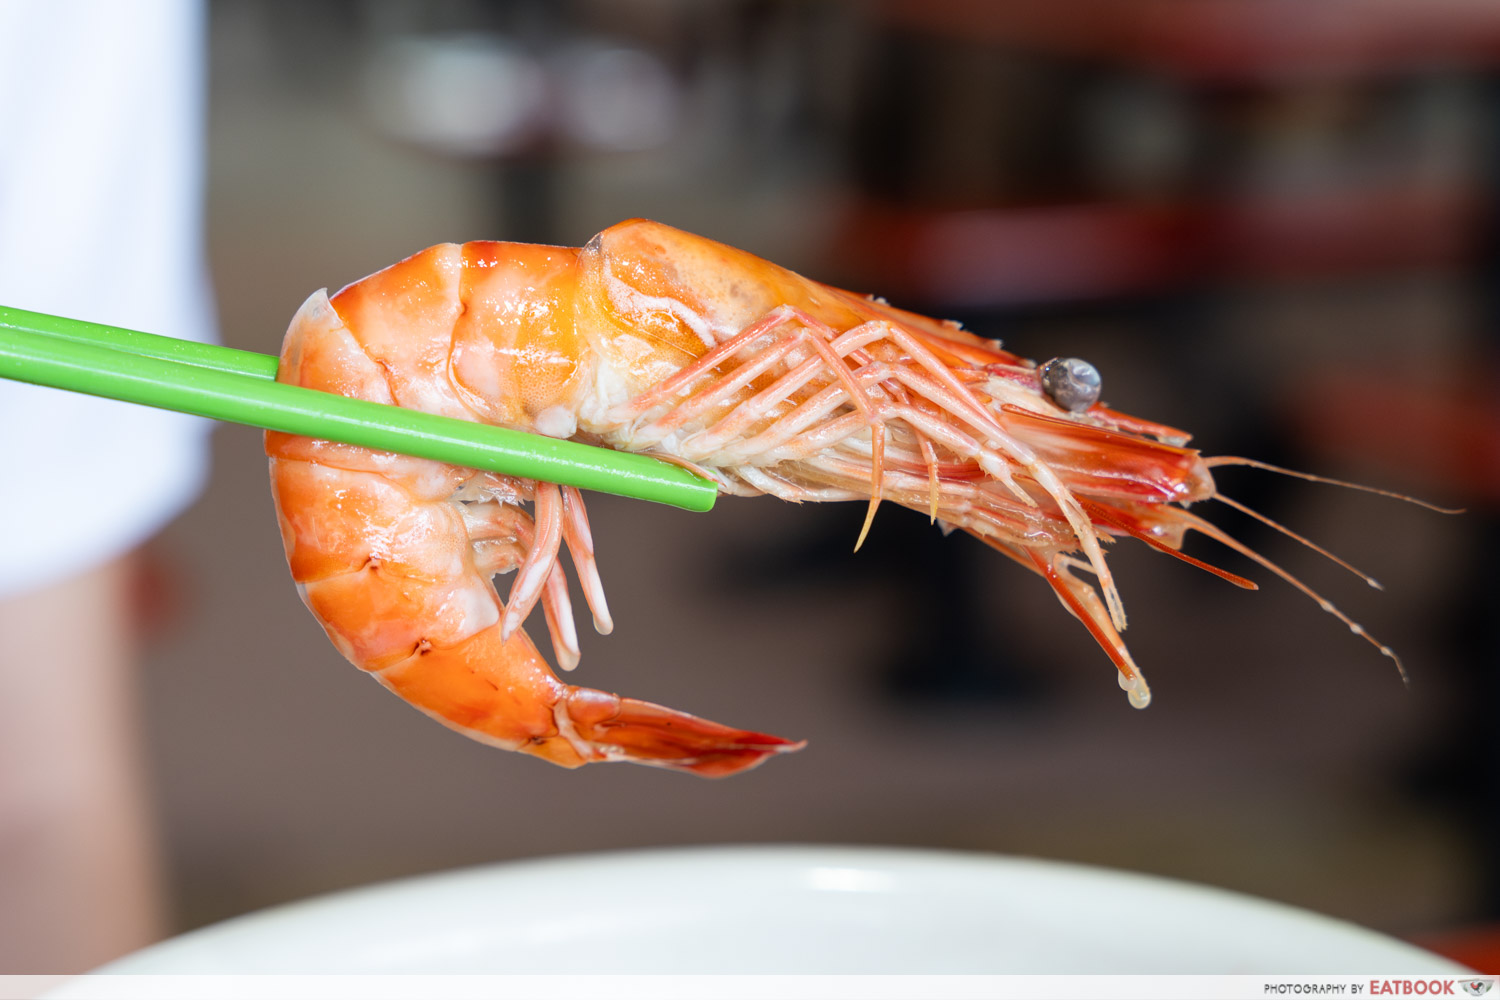 zion-road-big-prawn-noodle-shrimp